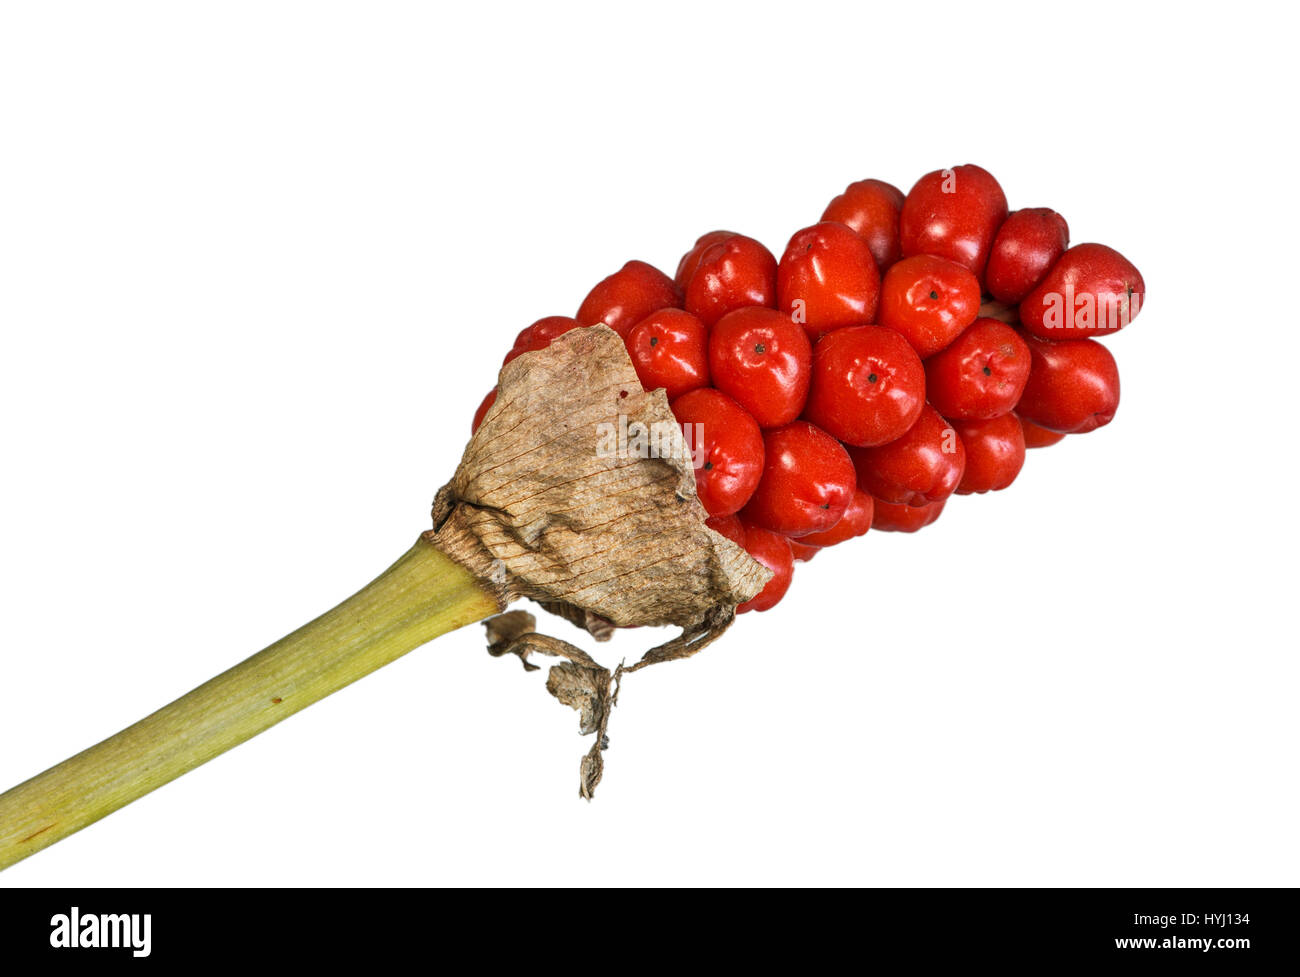 Infructescence with ripe berries, common arum (Arum maculatum), Switzerland Stock Photo